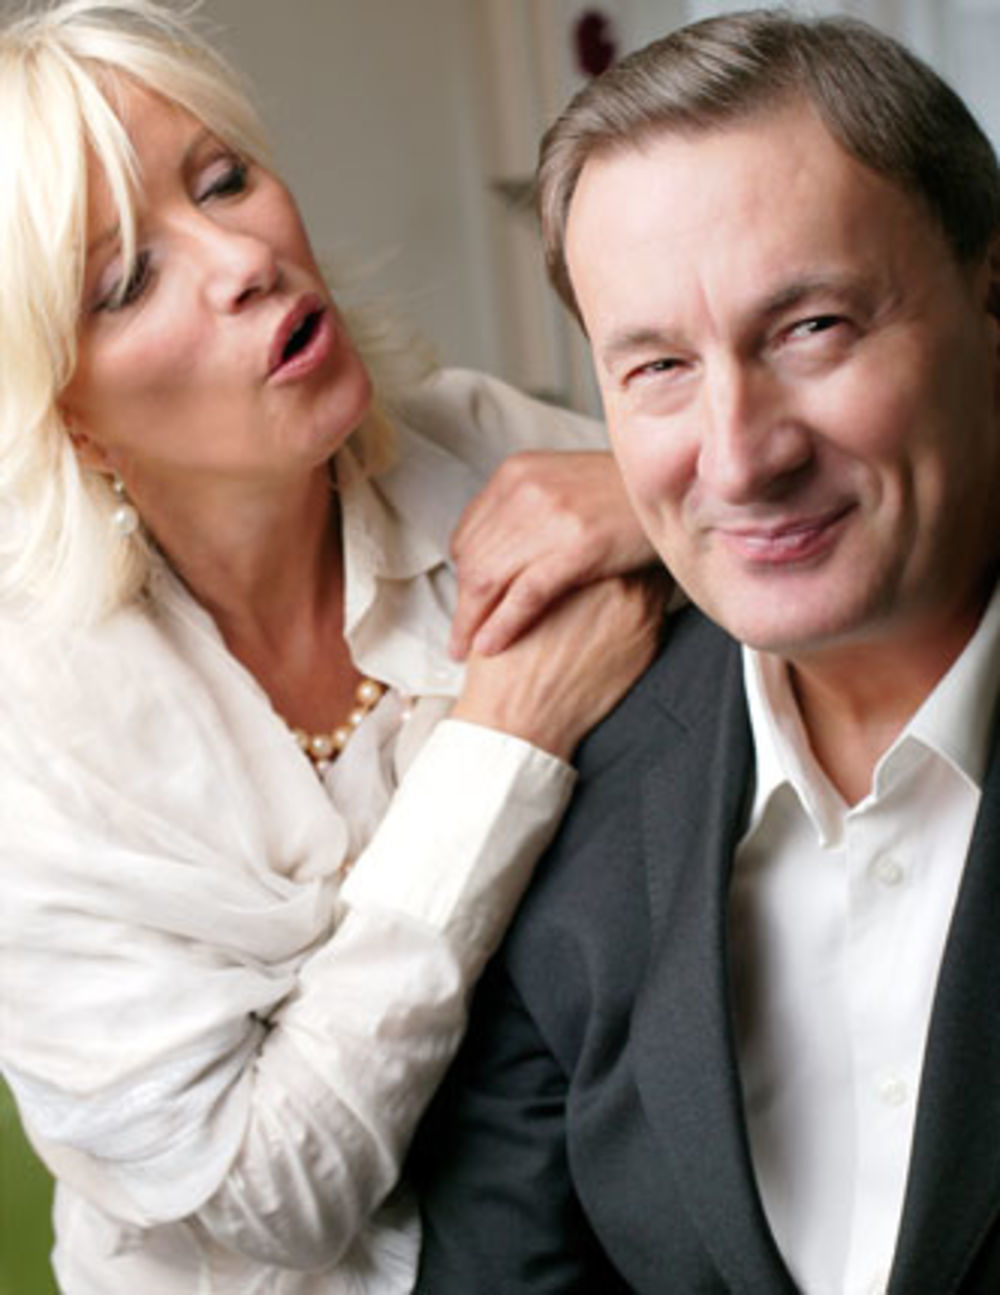 Folk pevačica Dragica Radosavljević Cakana i njen suprug Nebojša Negić otkrivaju kojim su se estetskim tretmanima podvrgli kako bi ublažili tragove godina na svojim licima